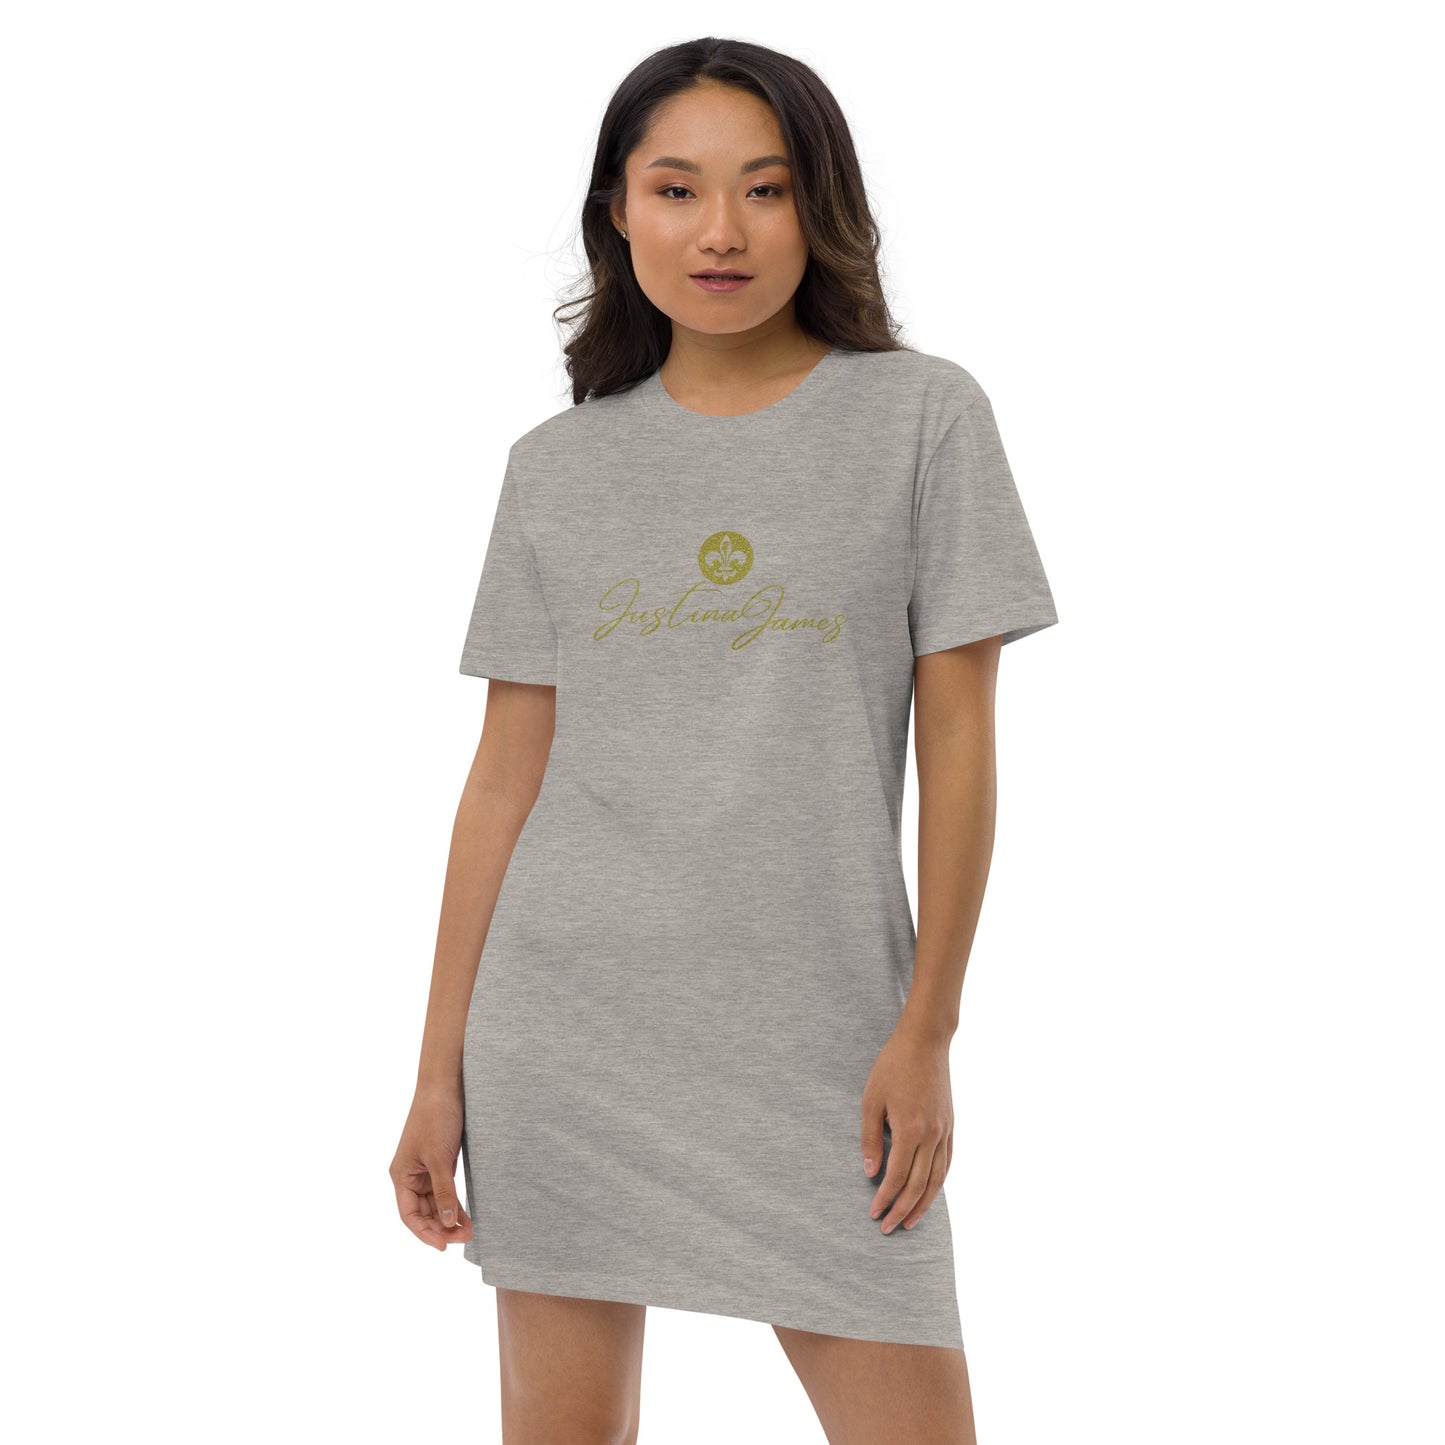 Justina James Organic cotton t-shirt dress